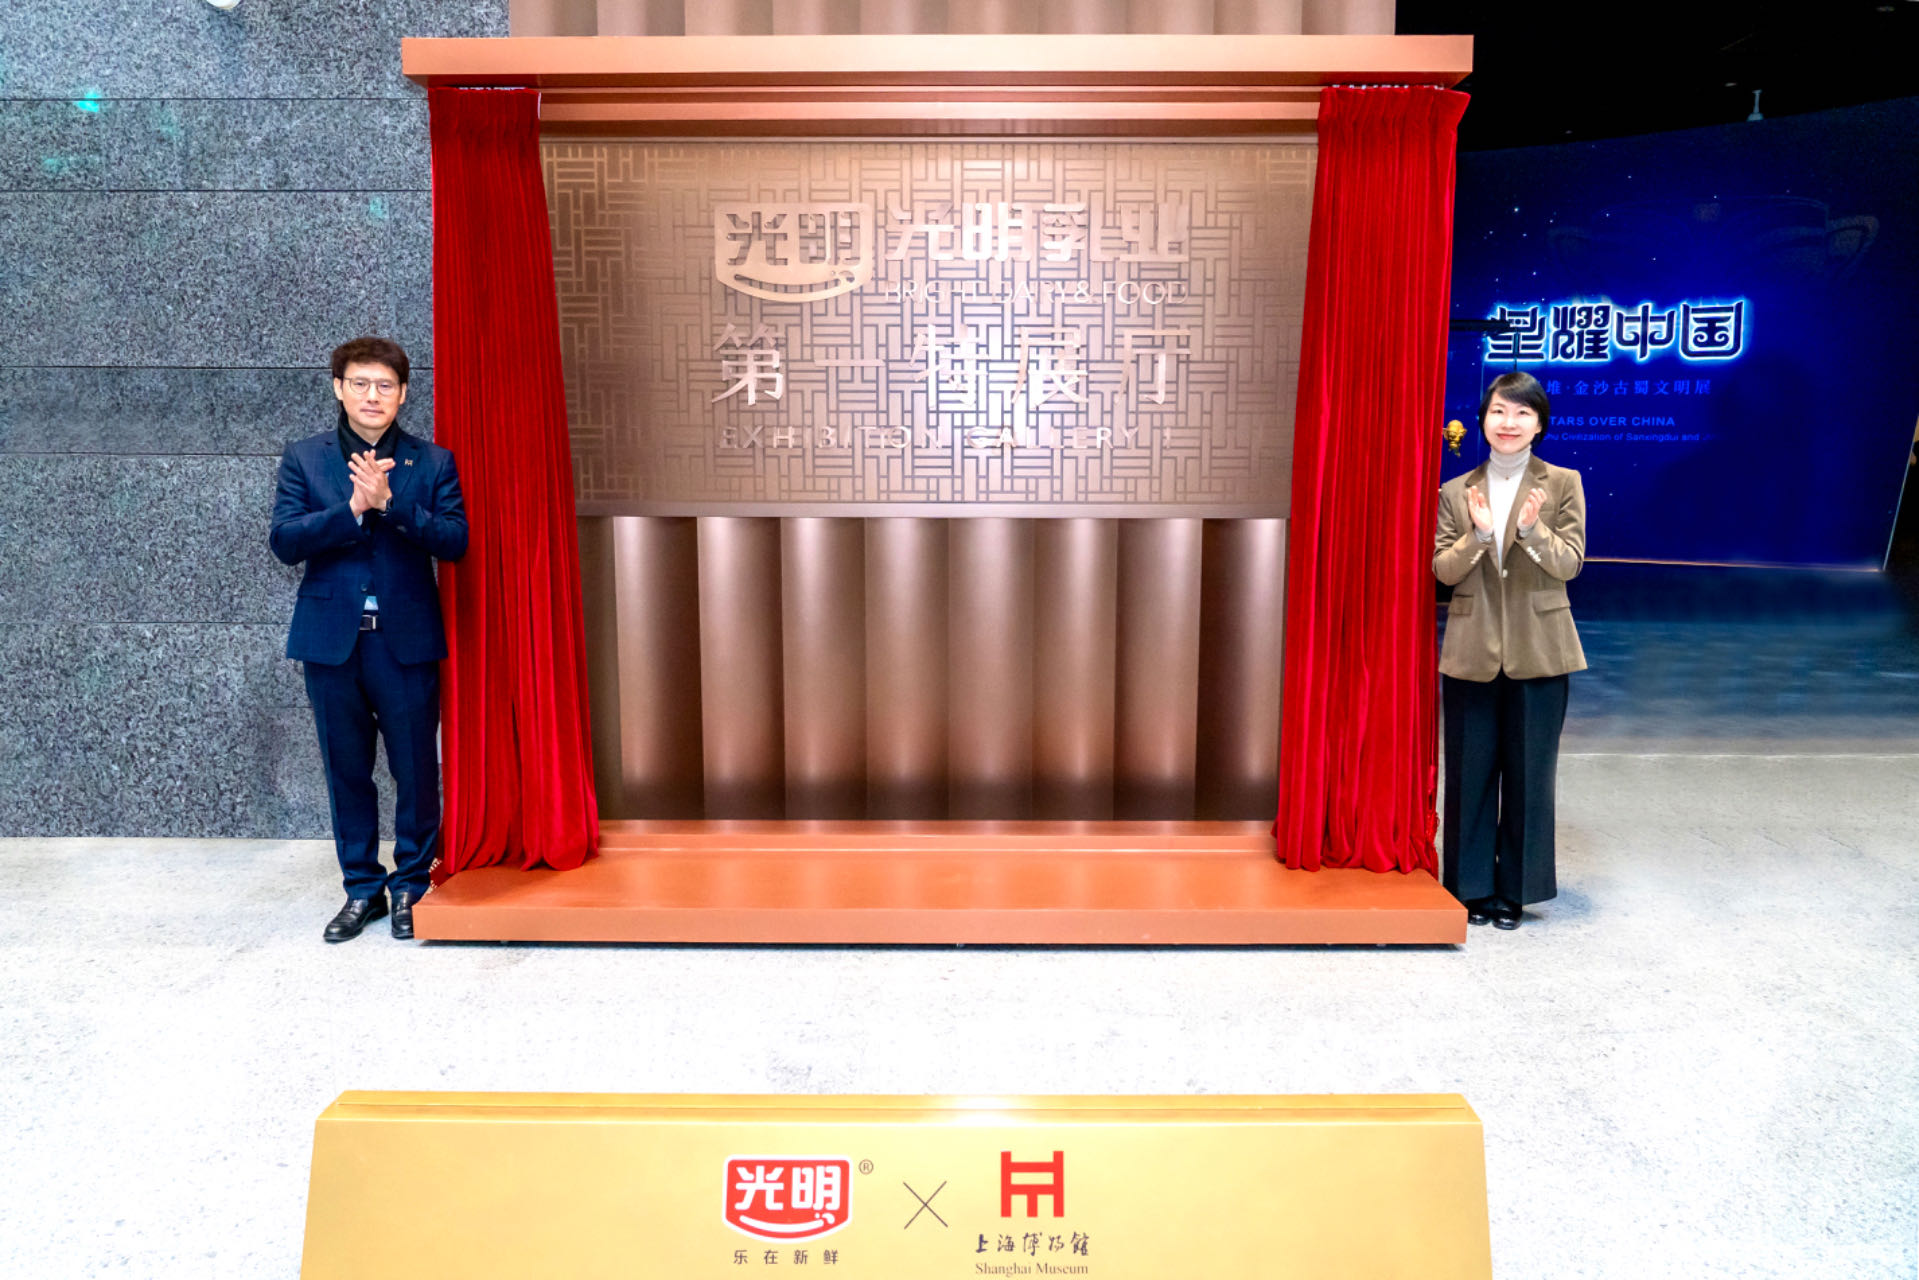 上海博物馆馆长褚晓波与光明乳业党委副书记、总裁贲敏共同为光明乳业冠名的第一特展厅揭幕。 本文图均为 光明乳业供图